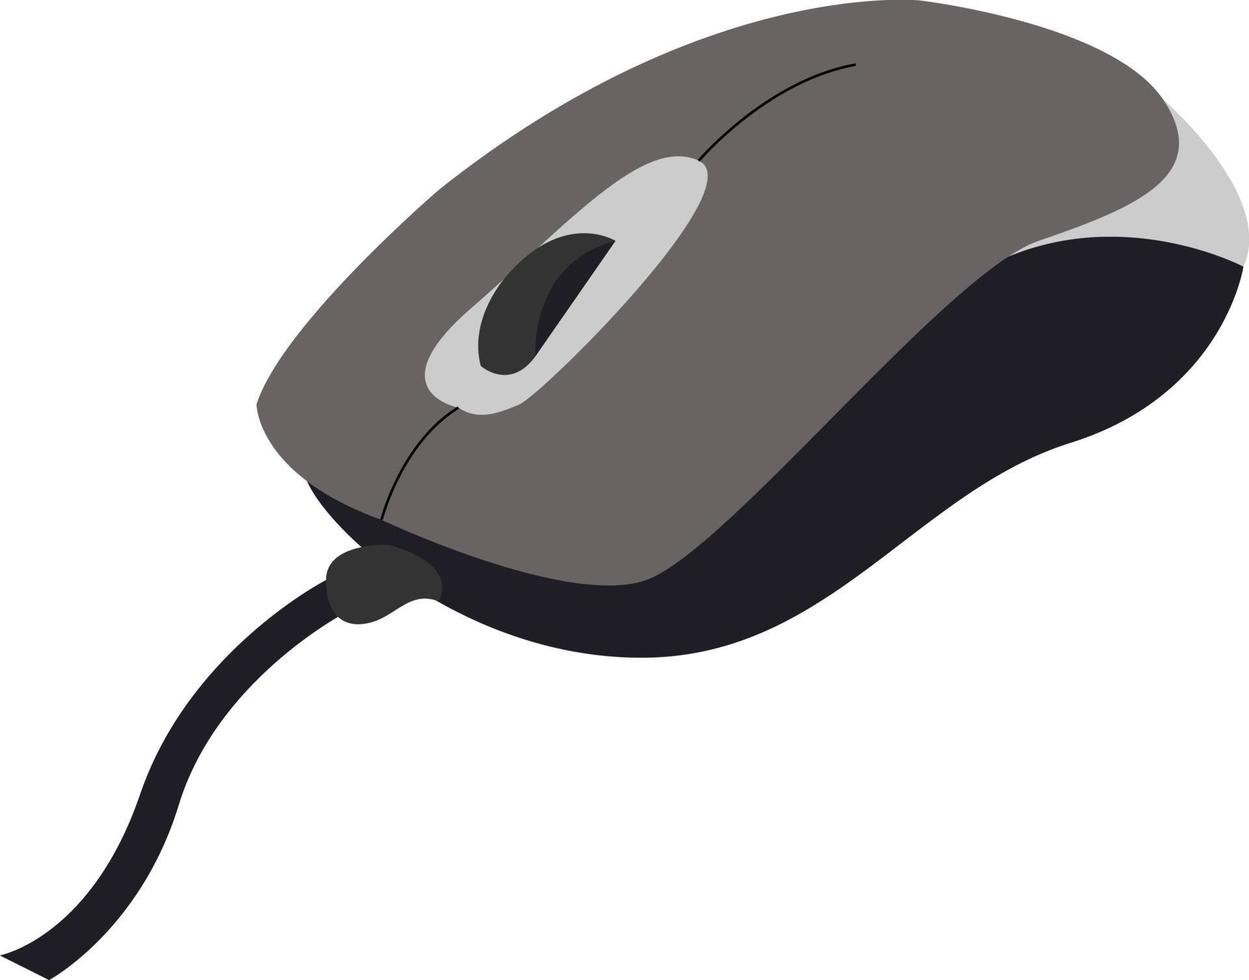 Ratón de PC, ilustración, vector sobre fondo blanco.